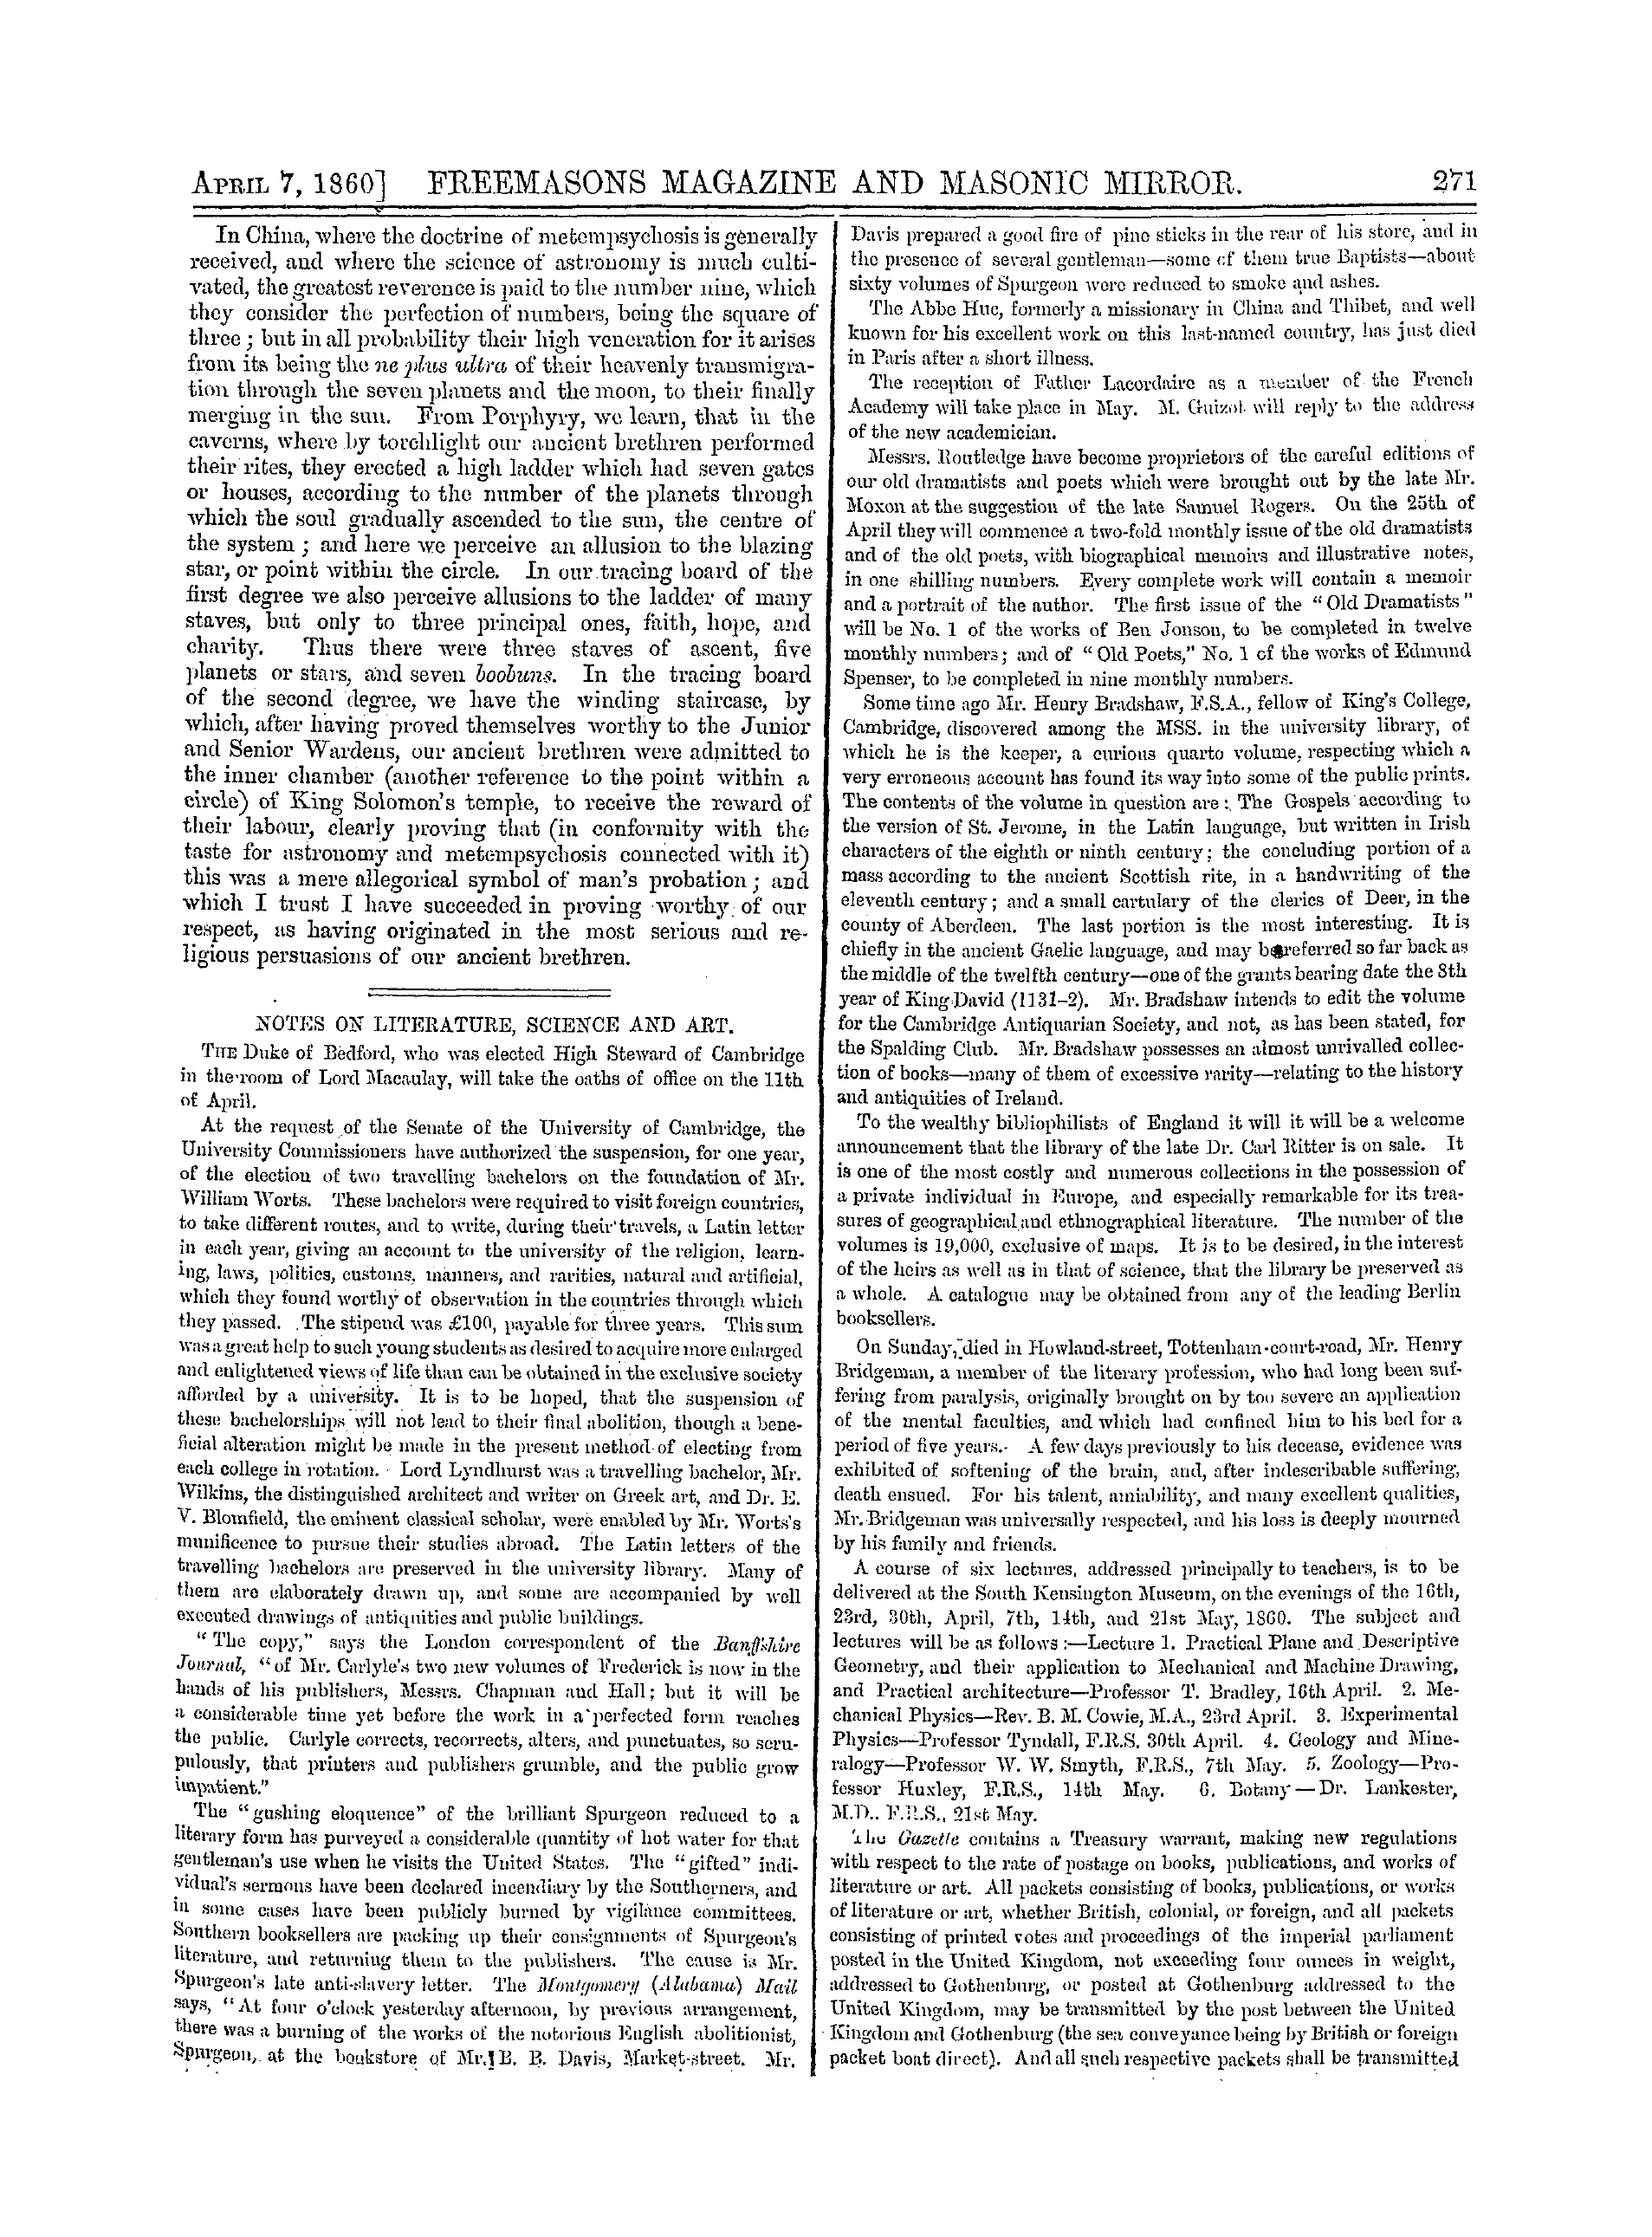 The Freemasons' Monthly Magazine: 1860-04-07: 11